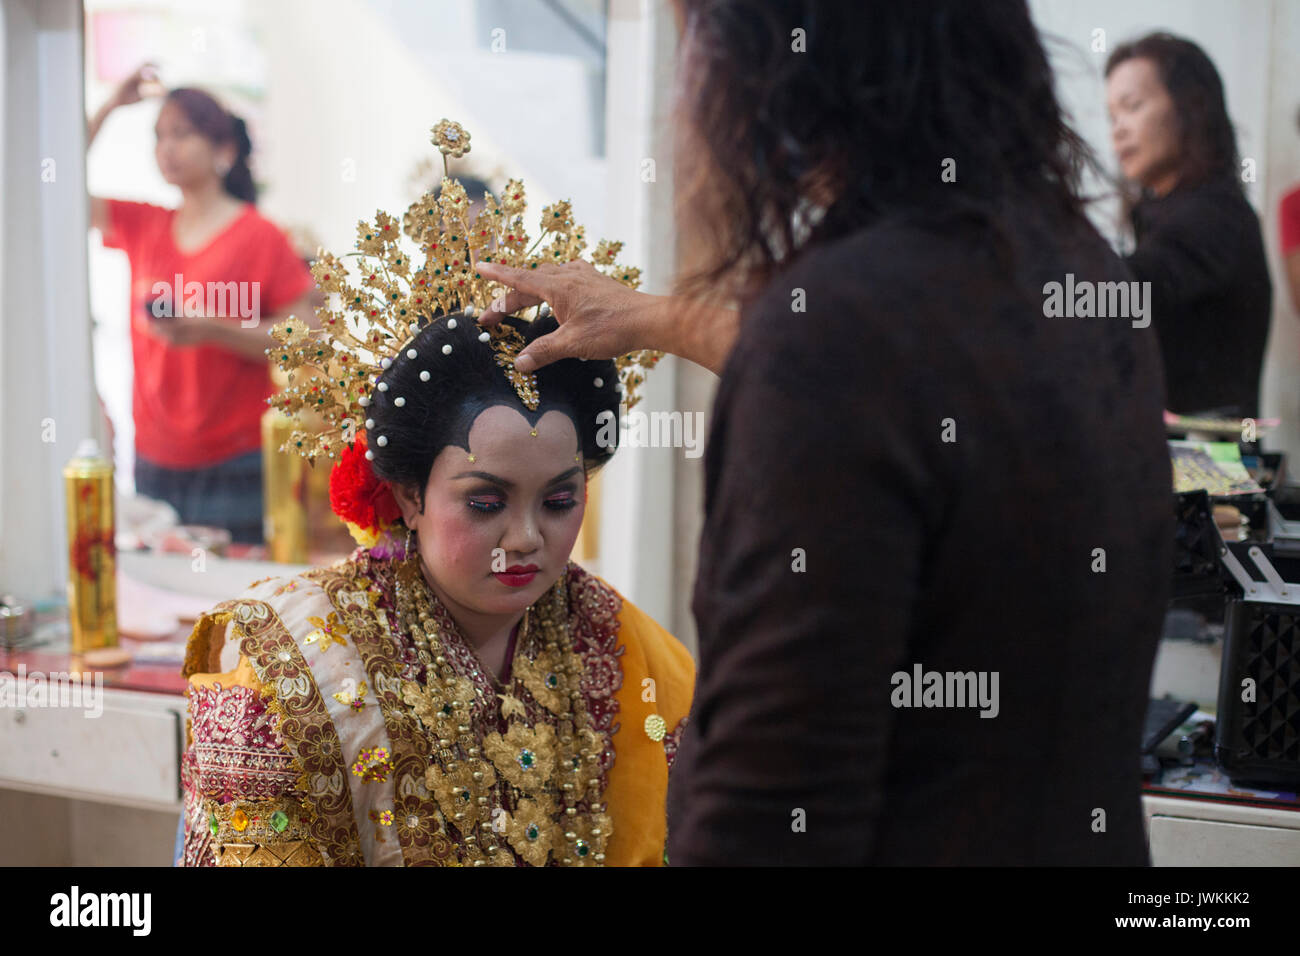 Después de terminar el maquillaje y vestirse Rika, la futura novia, con su vestido de novia, Ibu Haji Hasna le da una bendición final, colocando una mano sobre su cabeza y susurrando una oración. Foto de stock